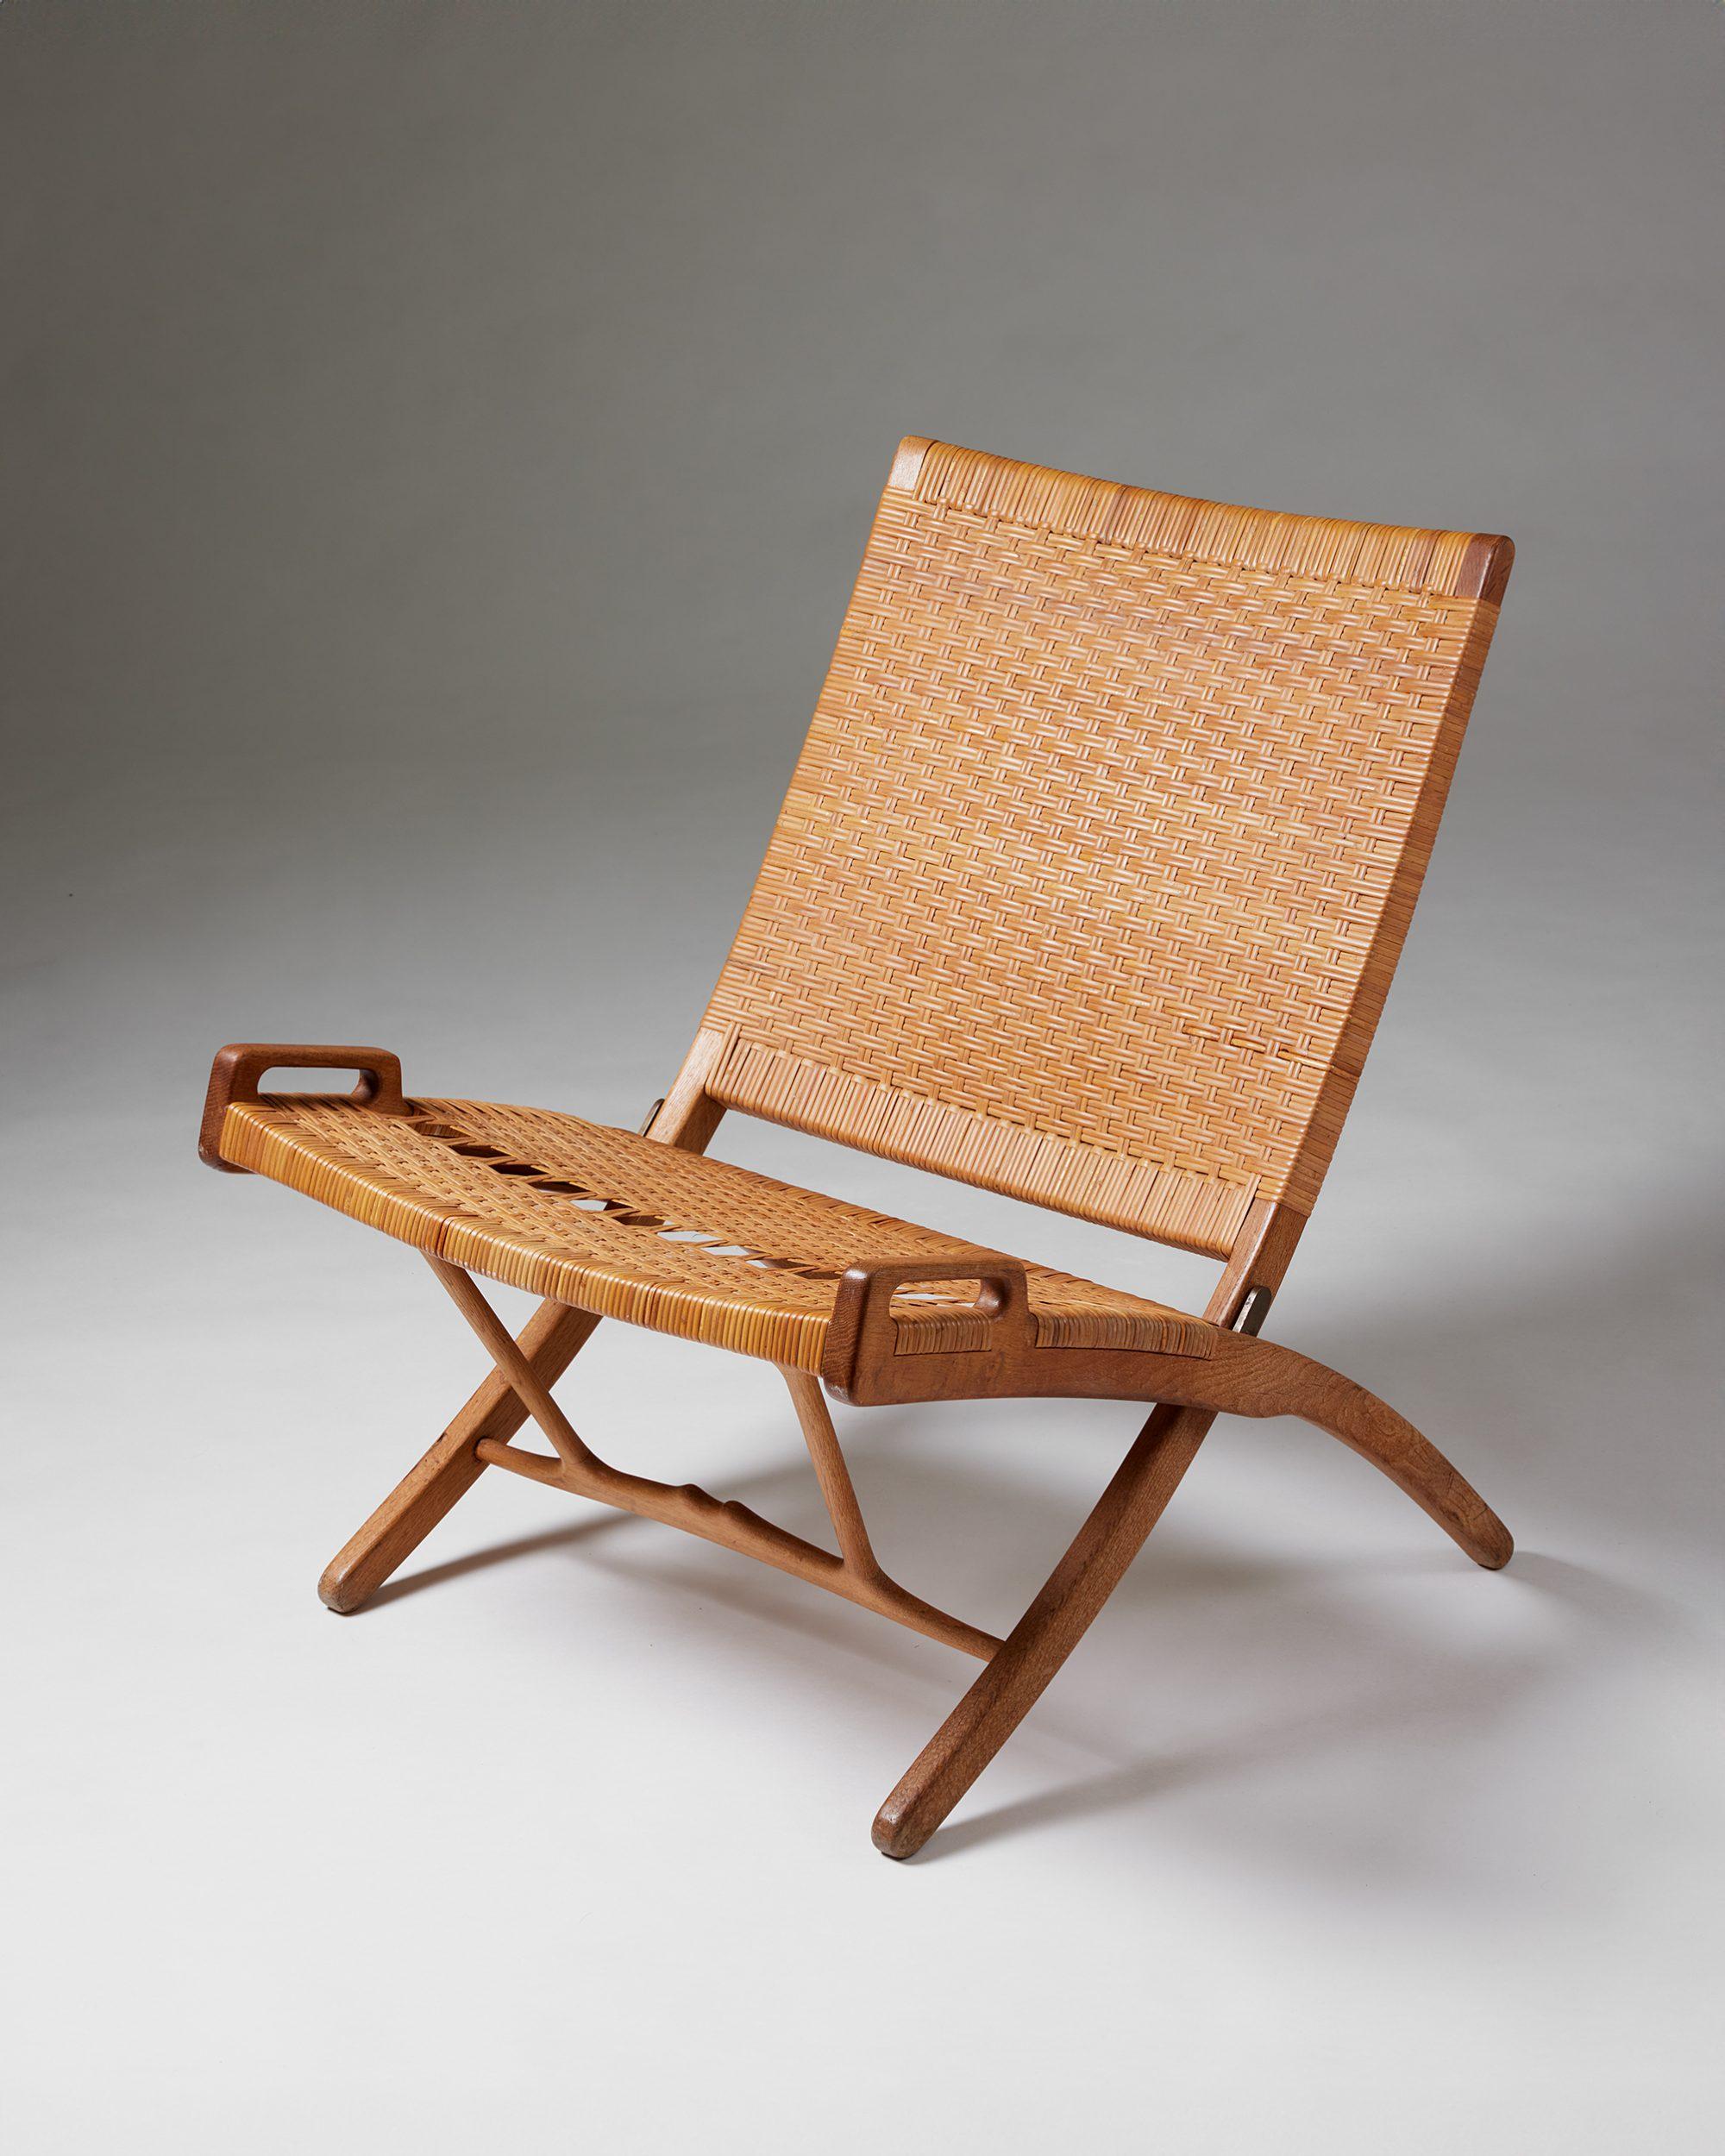 Hans J. Wegner est le père du design danois et est bien connu pour avoir créé certaines des chaises les plus emblématiques des 100 dernières années. Fils d'un cordonnier, Wegner a porté le design danois sur la scène internationale grâce à sa